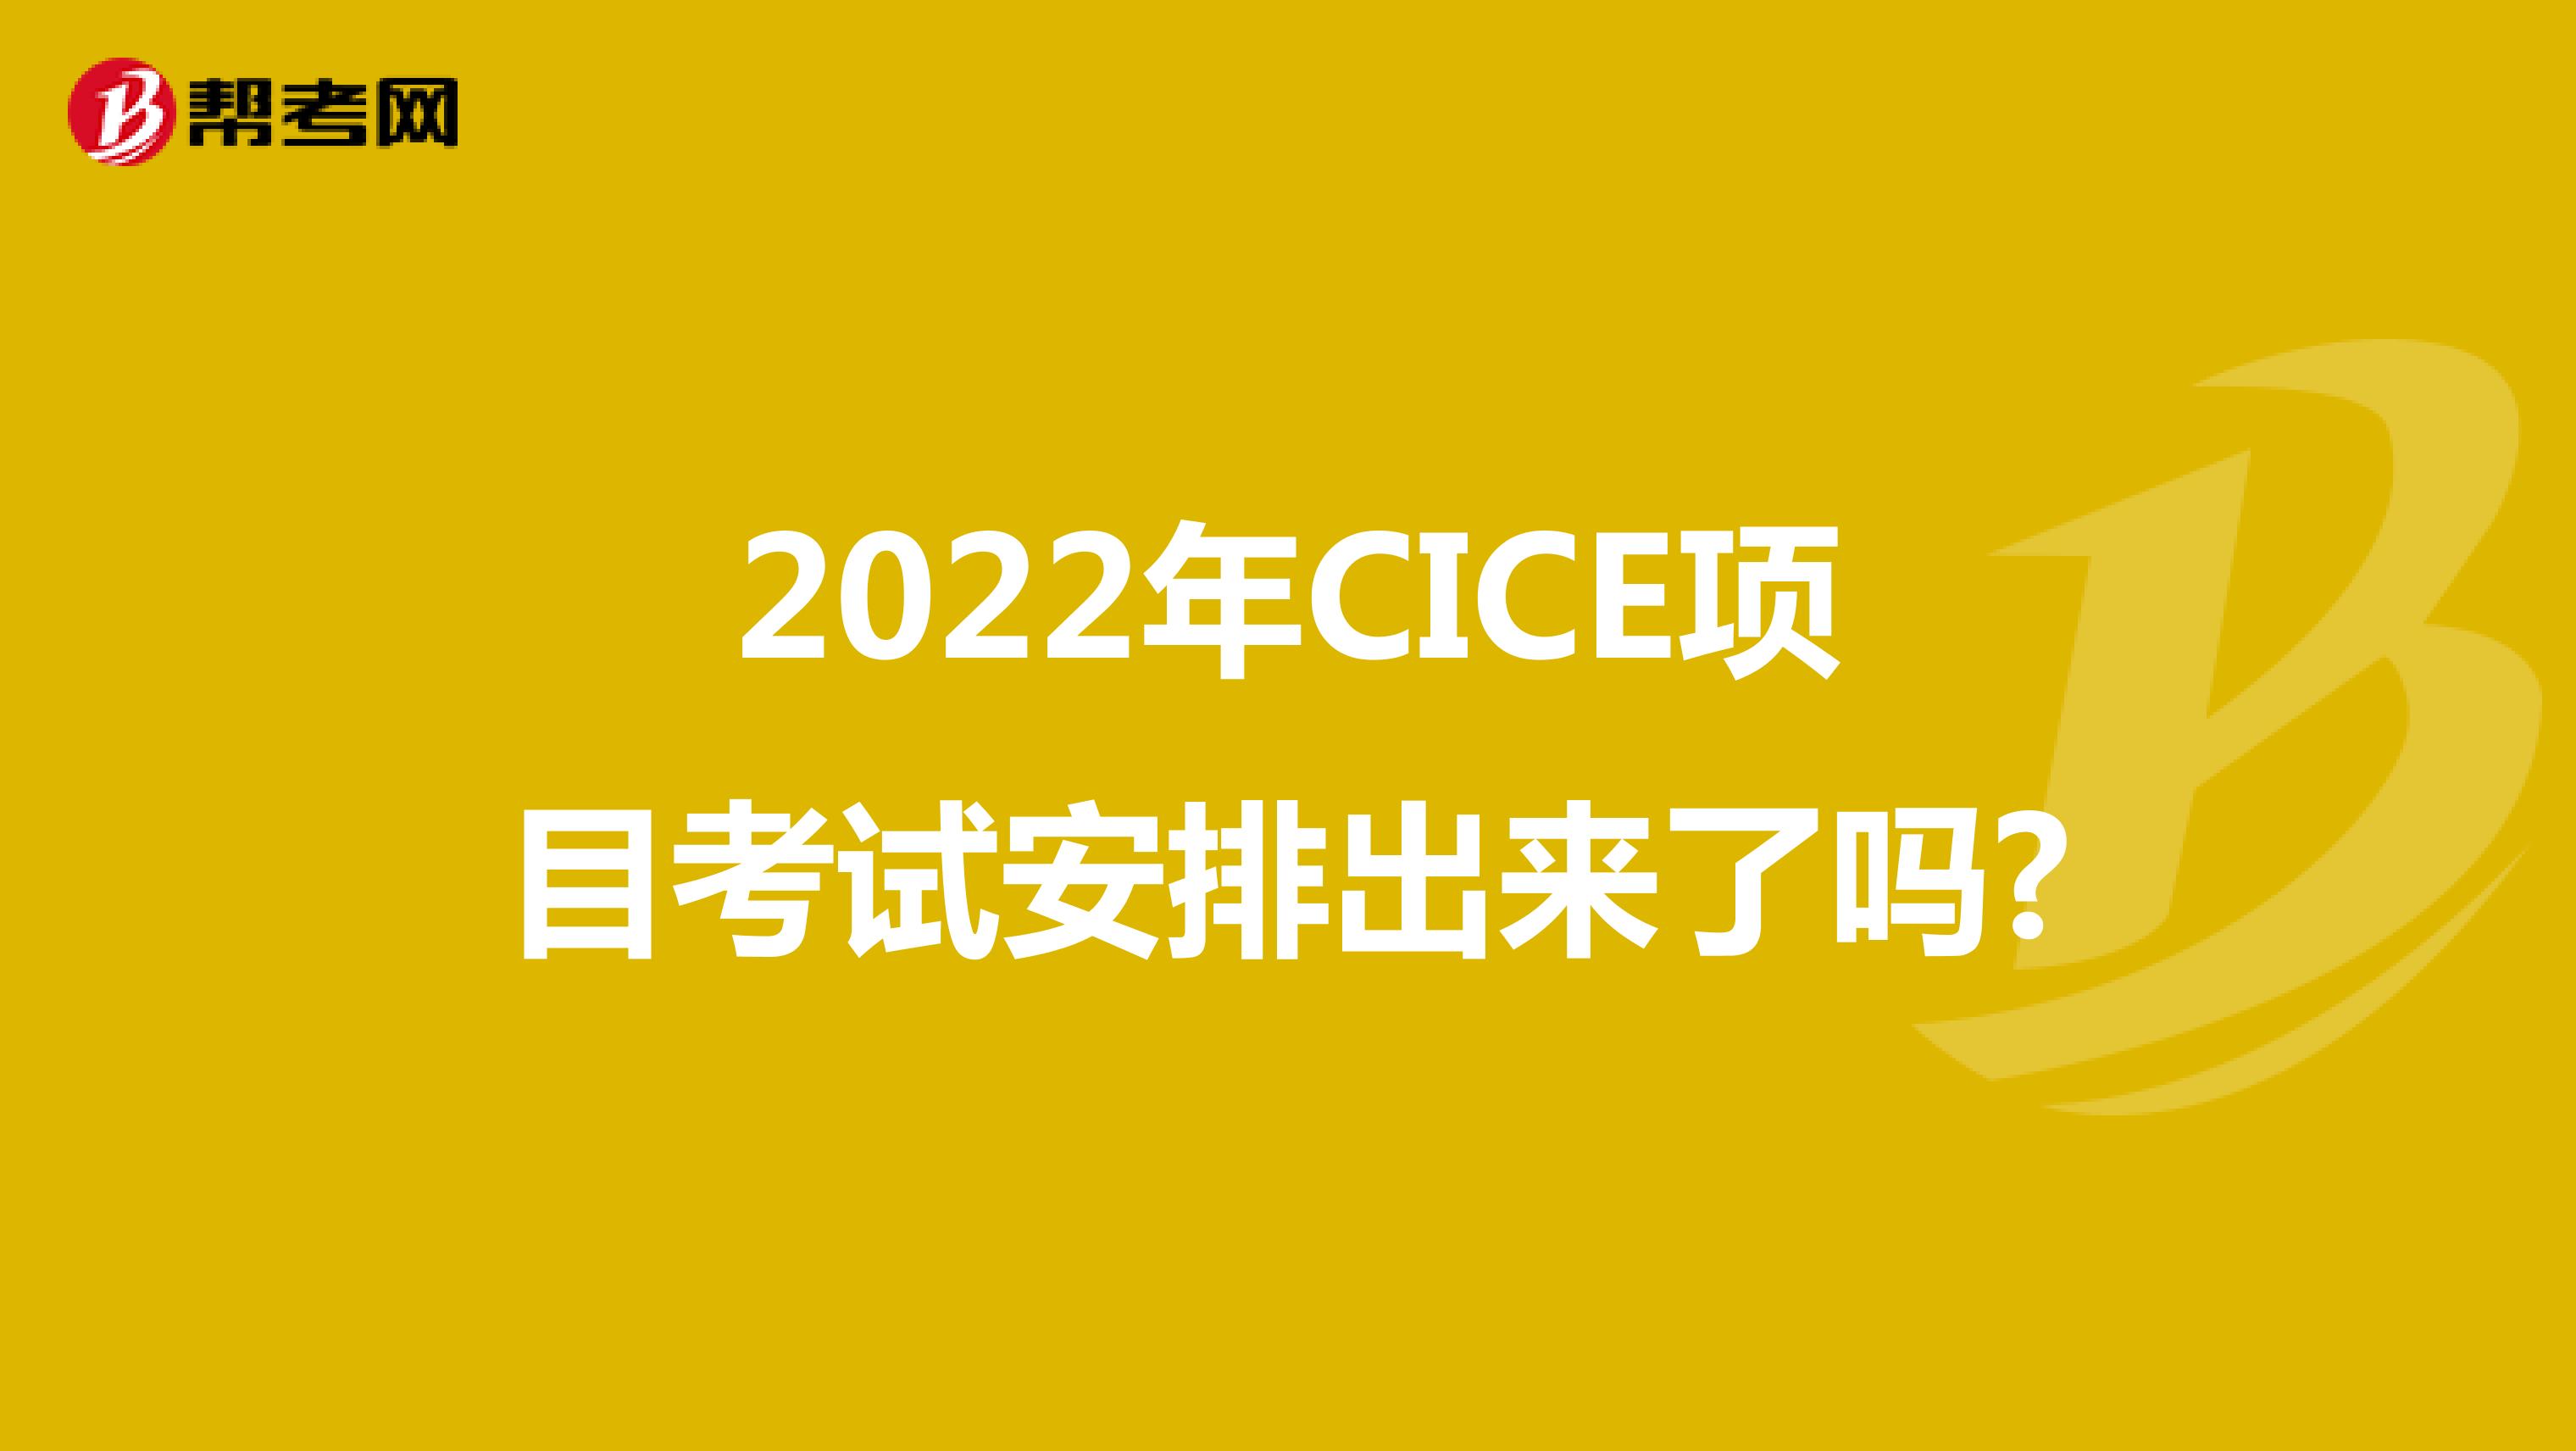 2022年CICE项目考试安排出来了吗?